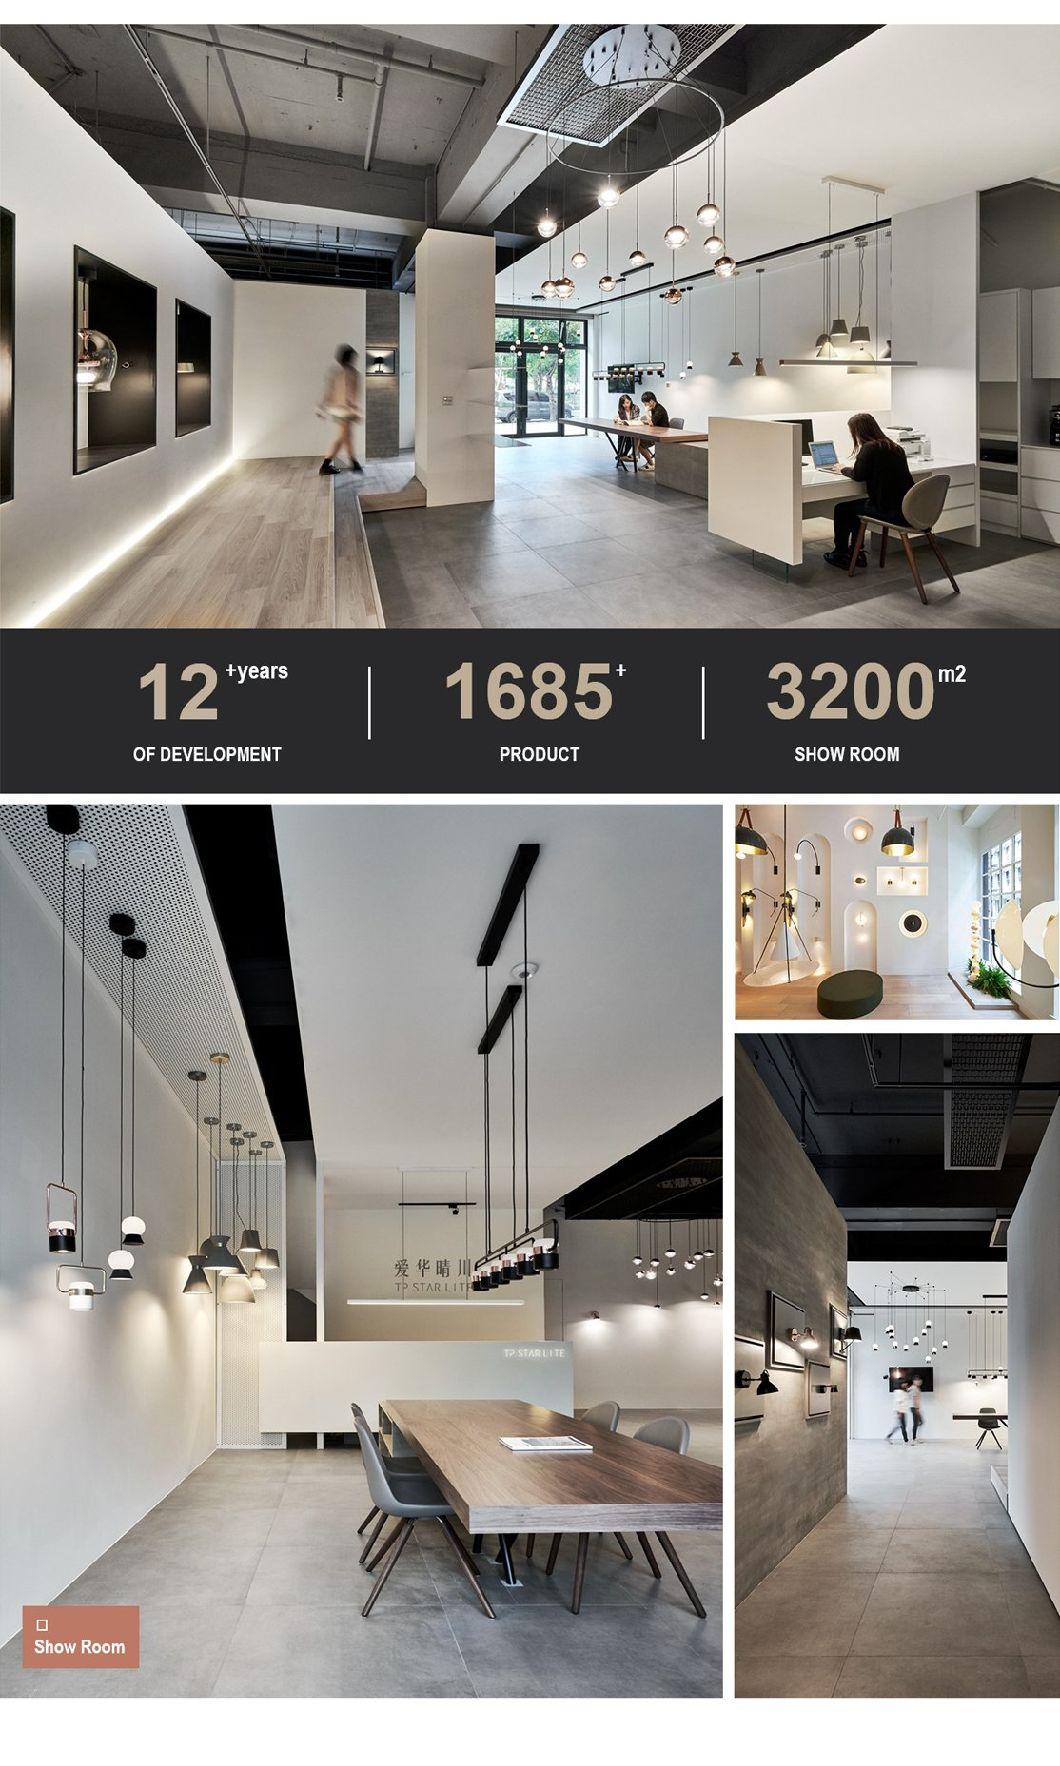 Modern Luxury Simple Living Room Chandelier Bedroom Lamp Ceiling Lamp 2020